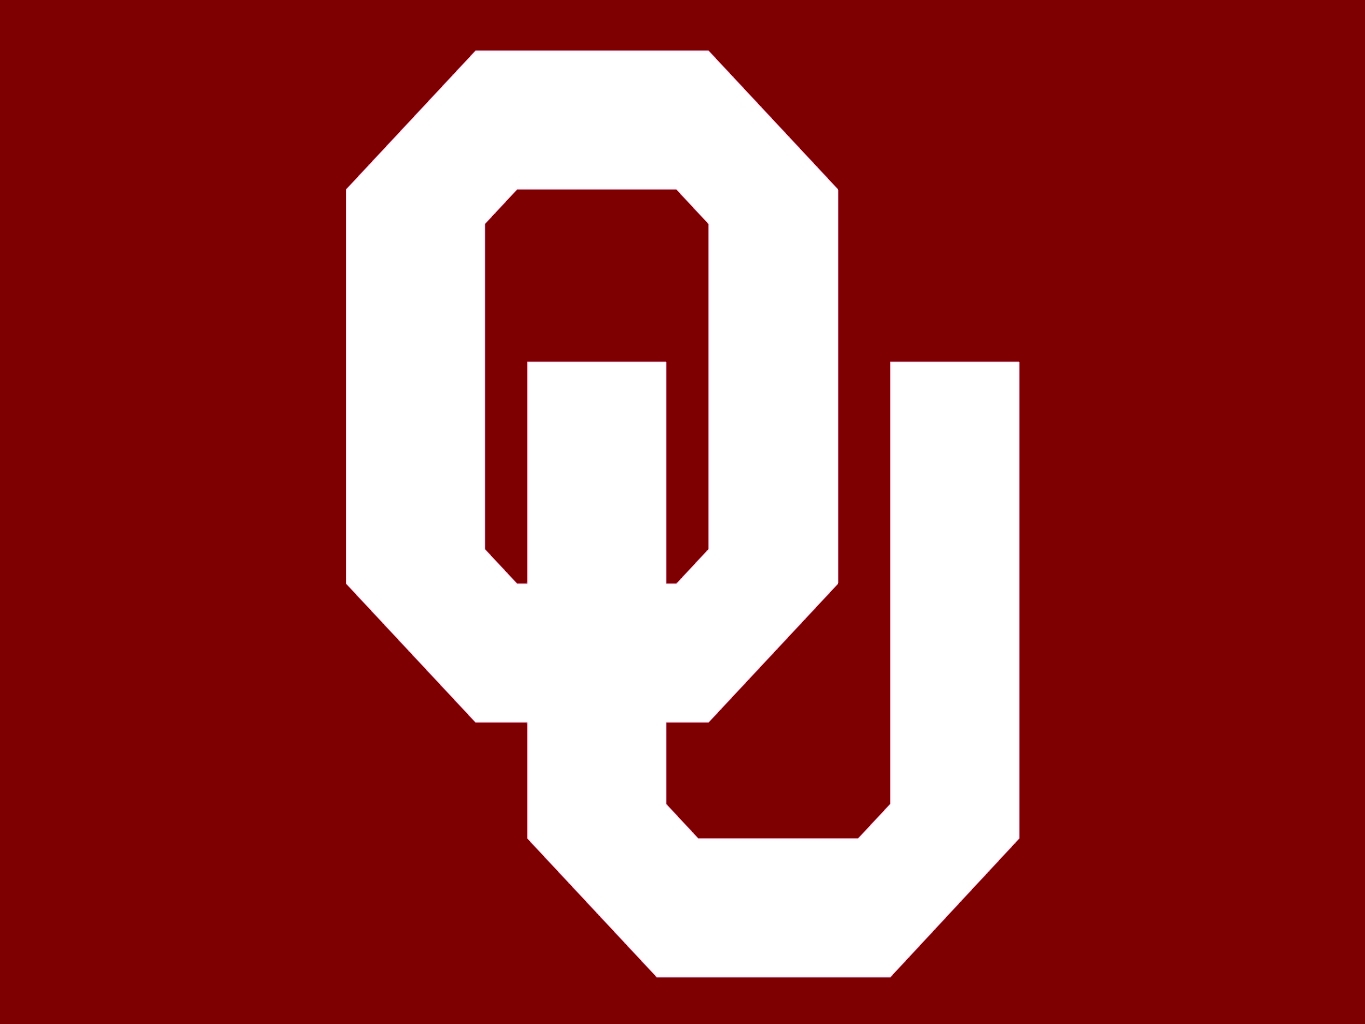 オクラホマ大学 University Of Oklahoma Ou スーナーズ カレッジ紹介38 Journeyman ジャーニーマン